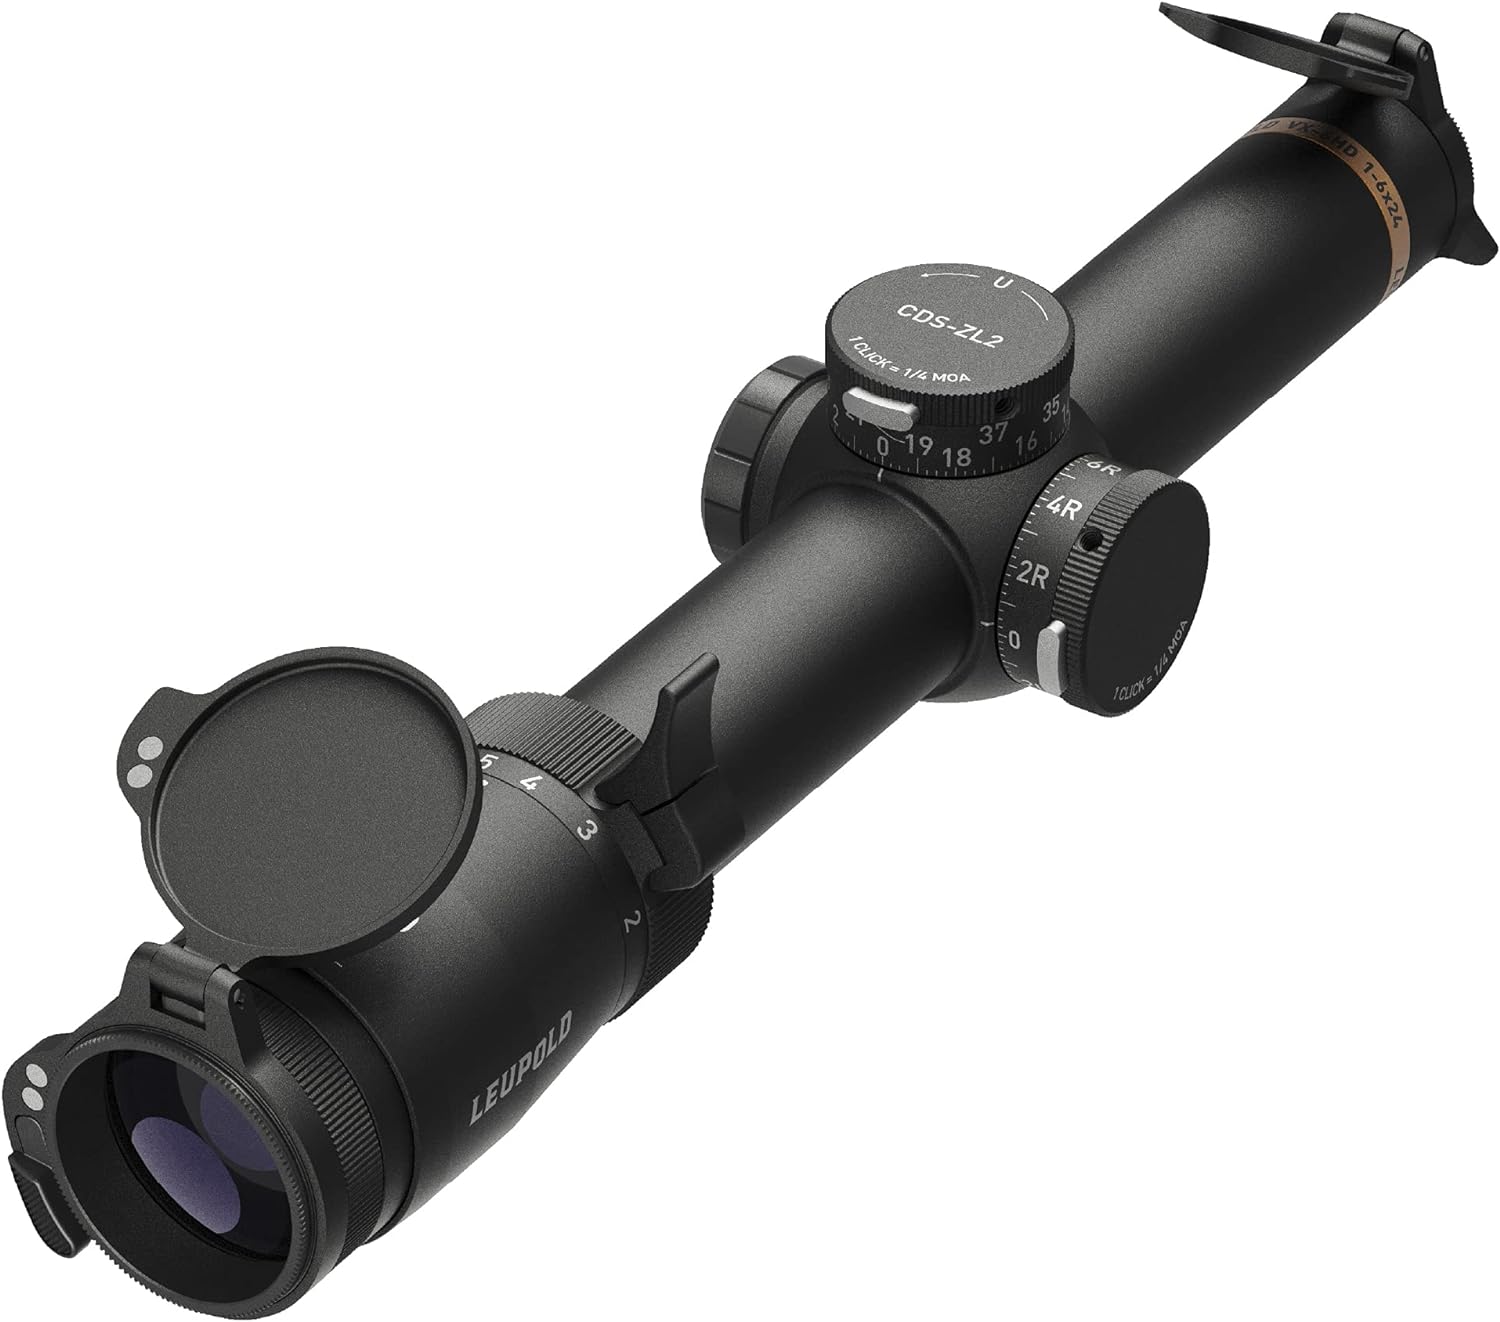 Leupold VX-6HD 1-6x24mm Riflescope - Leupold VX-6HD 1-6x24mm Riflescope Review